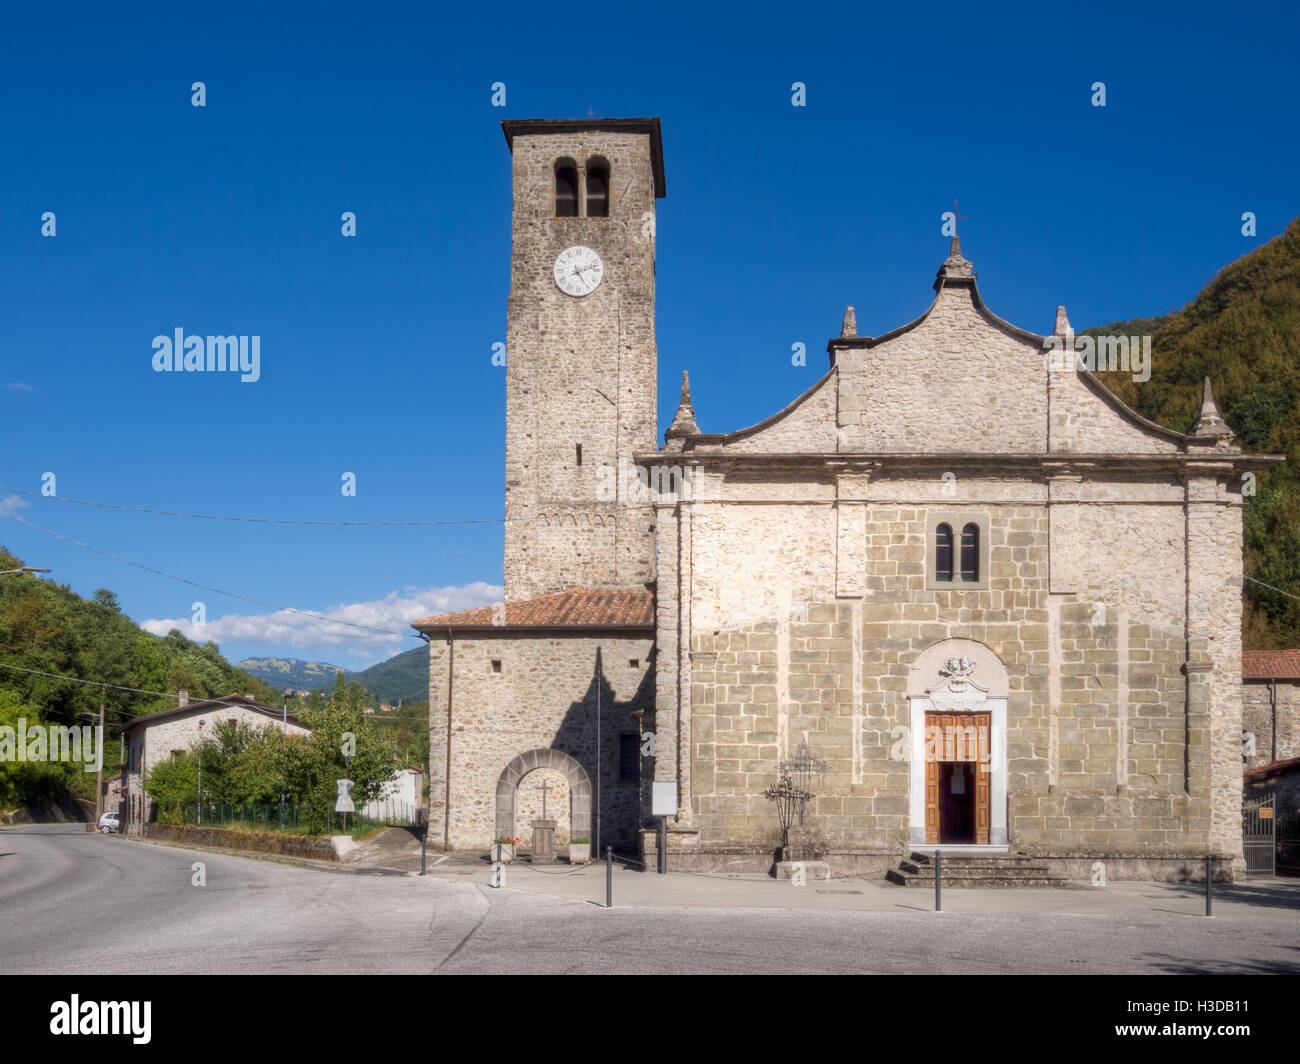 Cresspiano in Lunigiana del nord della Toscana. Architettura inusuale con 'Chiesa all interno di una chiesa facciata'. Foto Stock